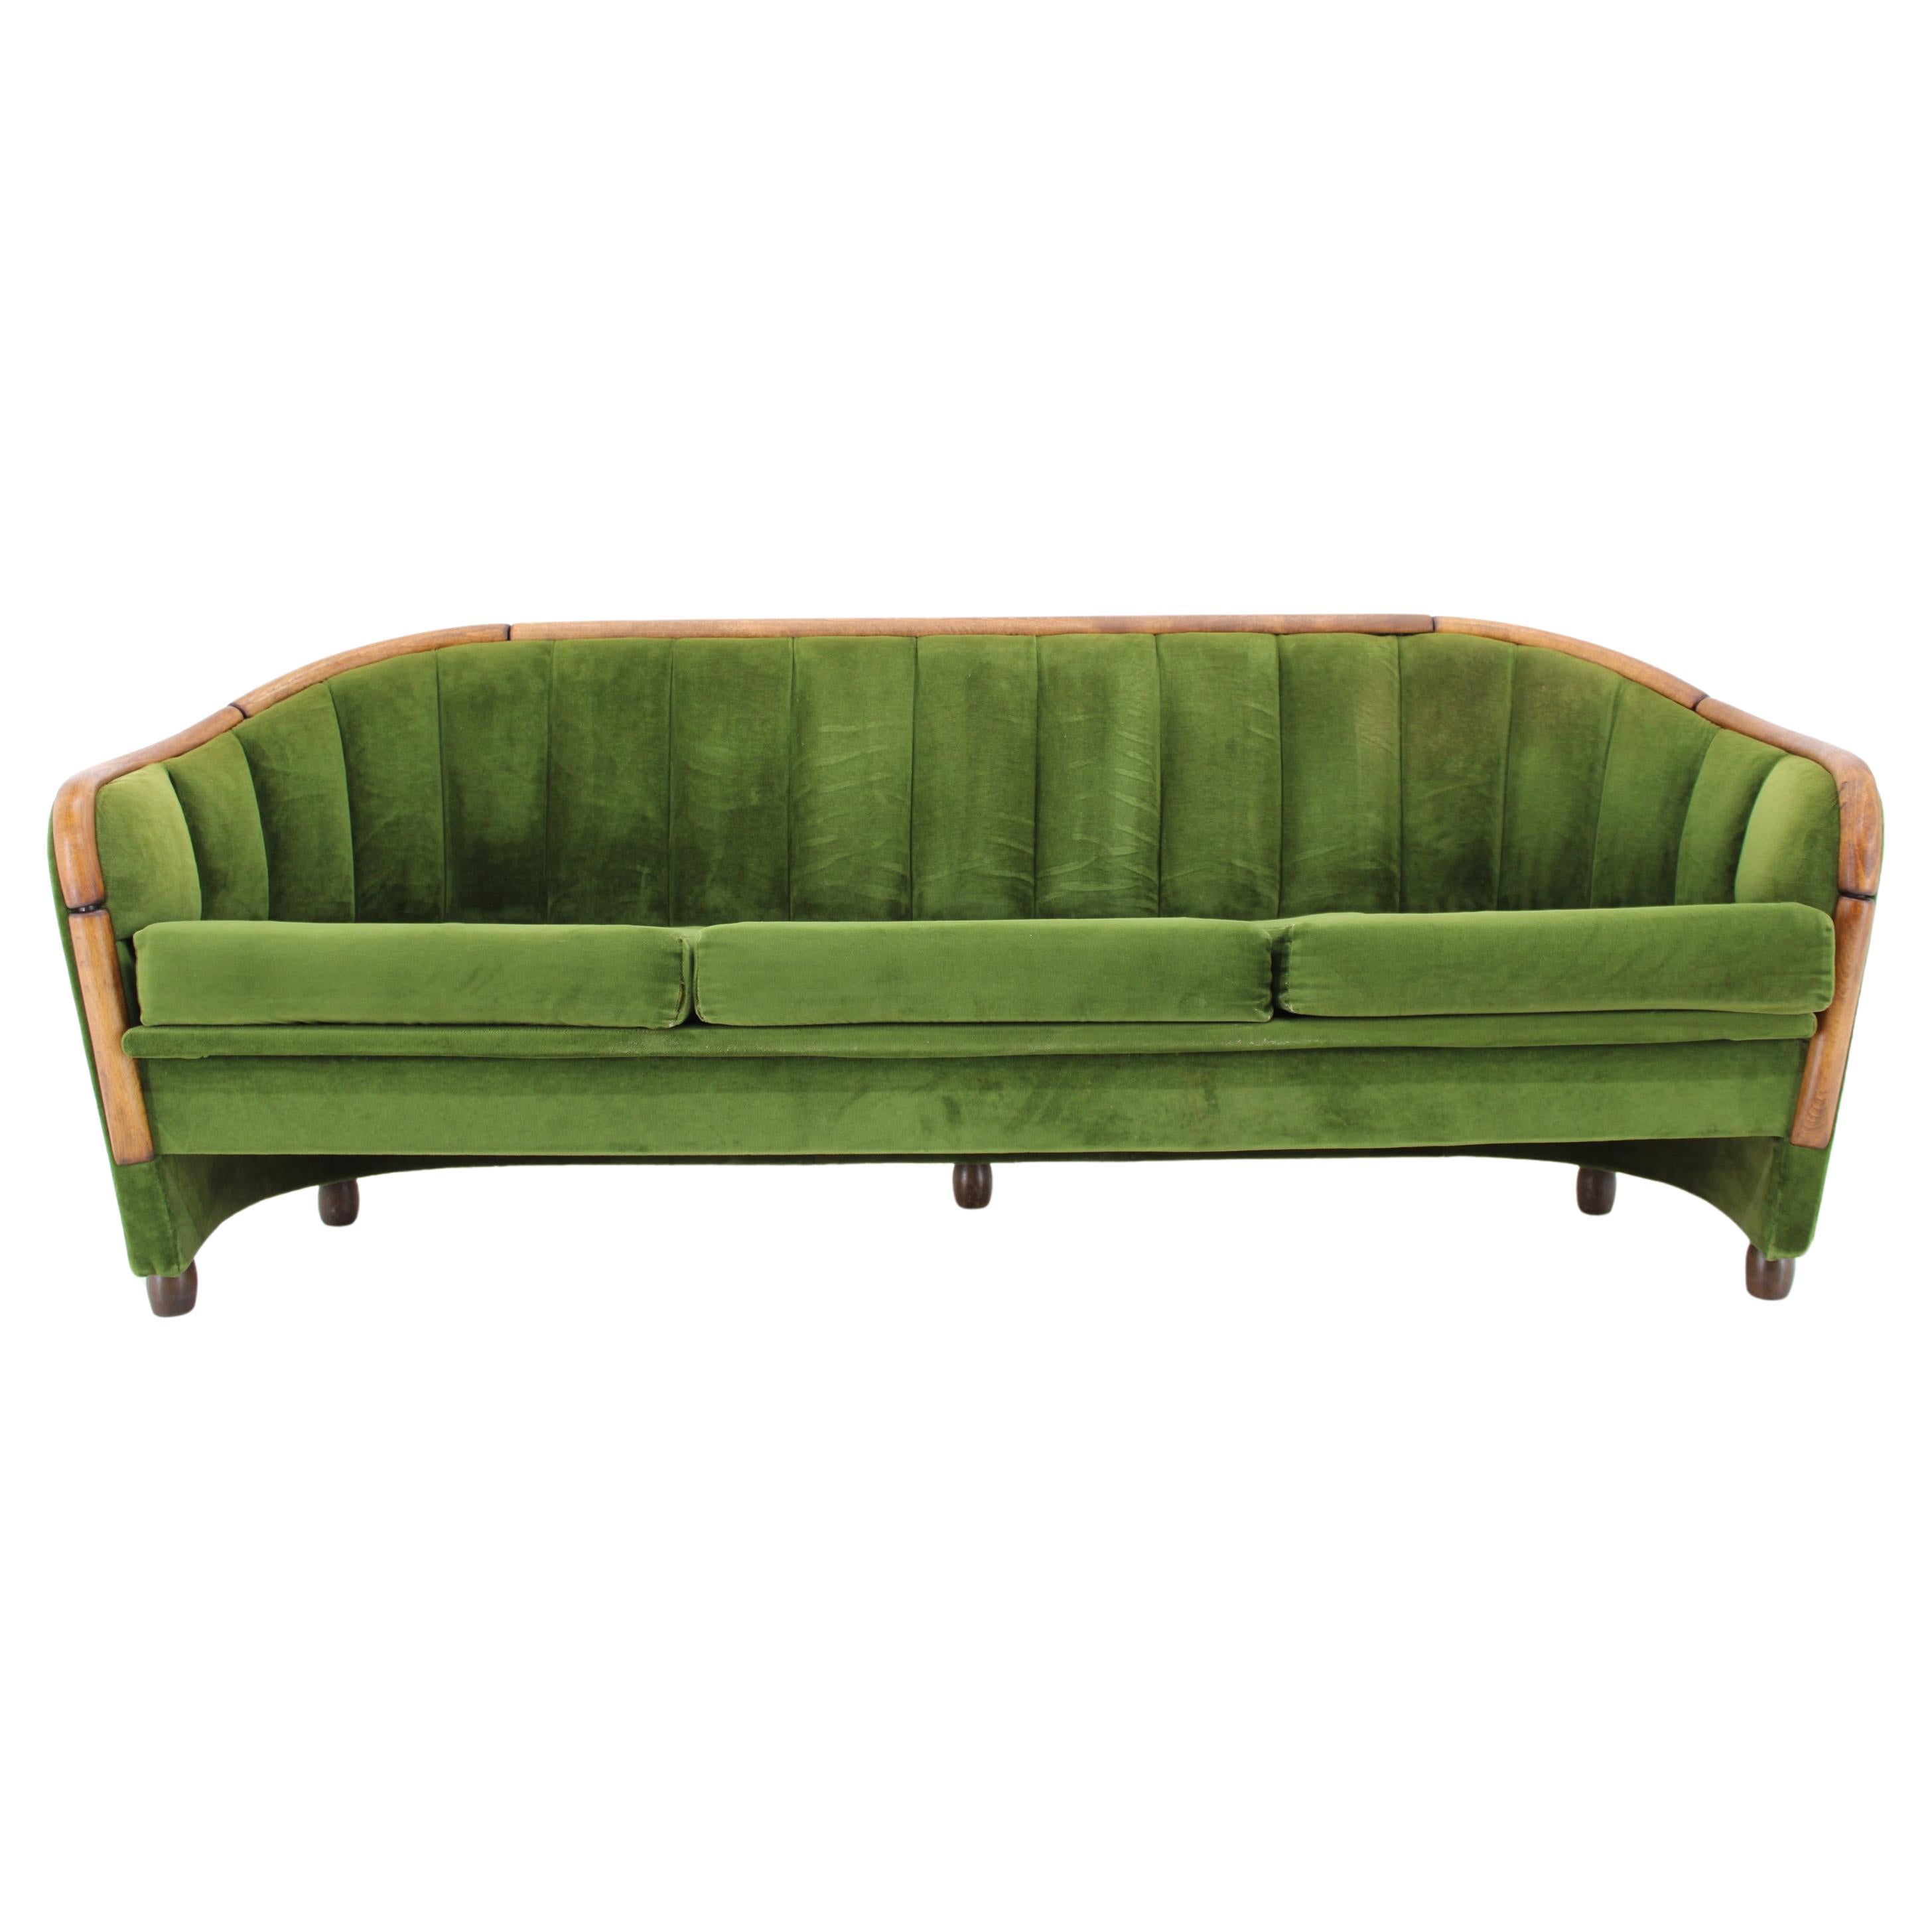 Dreisitzer-Sofa im Stil von Gio Ponti aus den 1950er Jahren, Tschechoslowakei